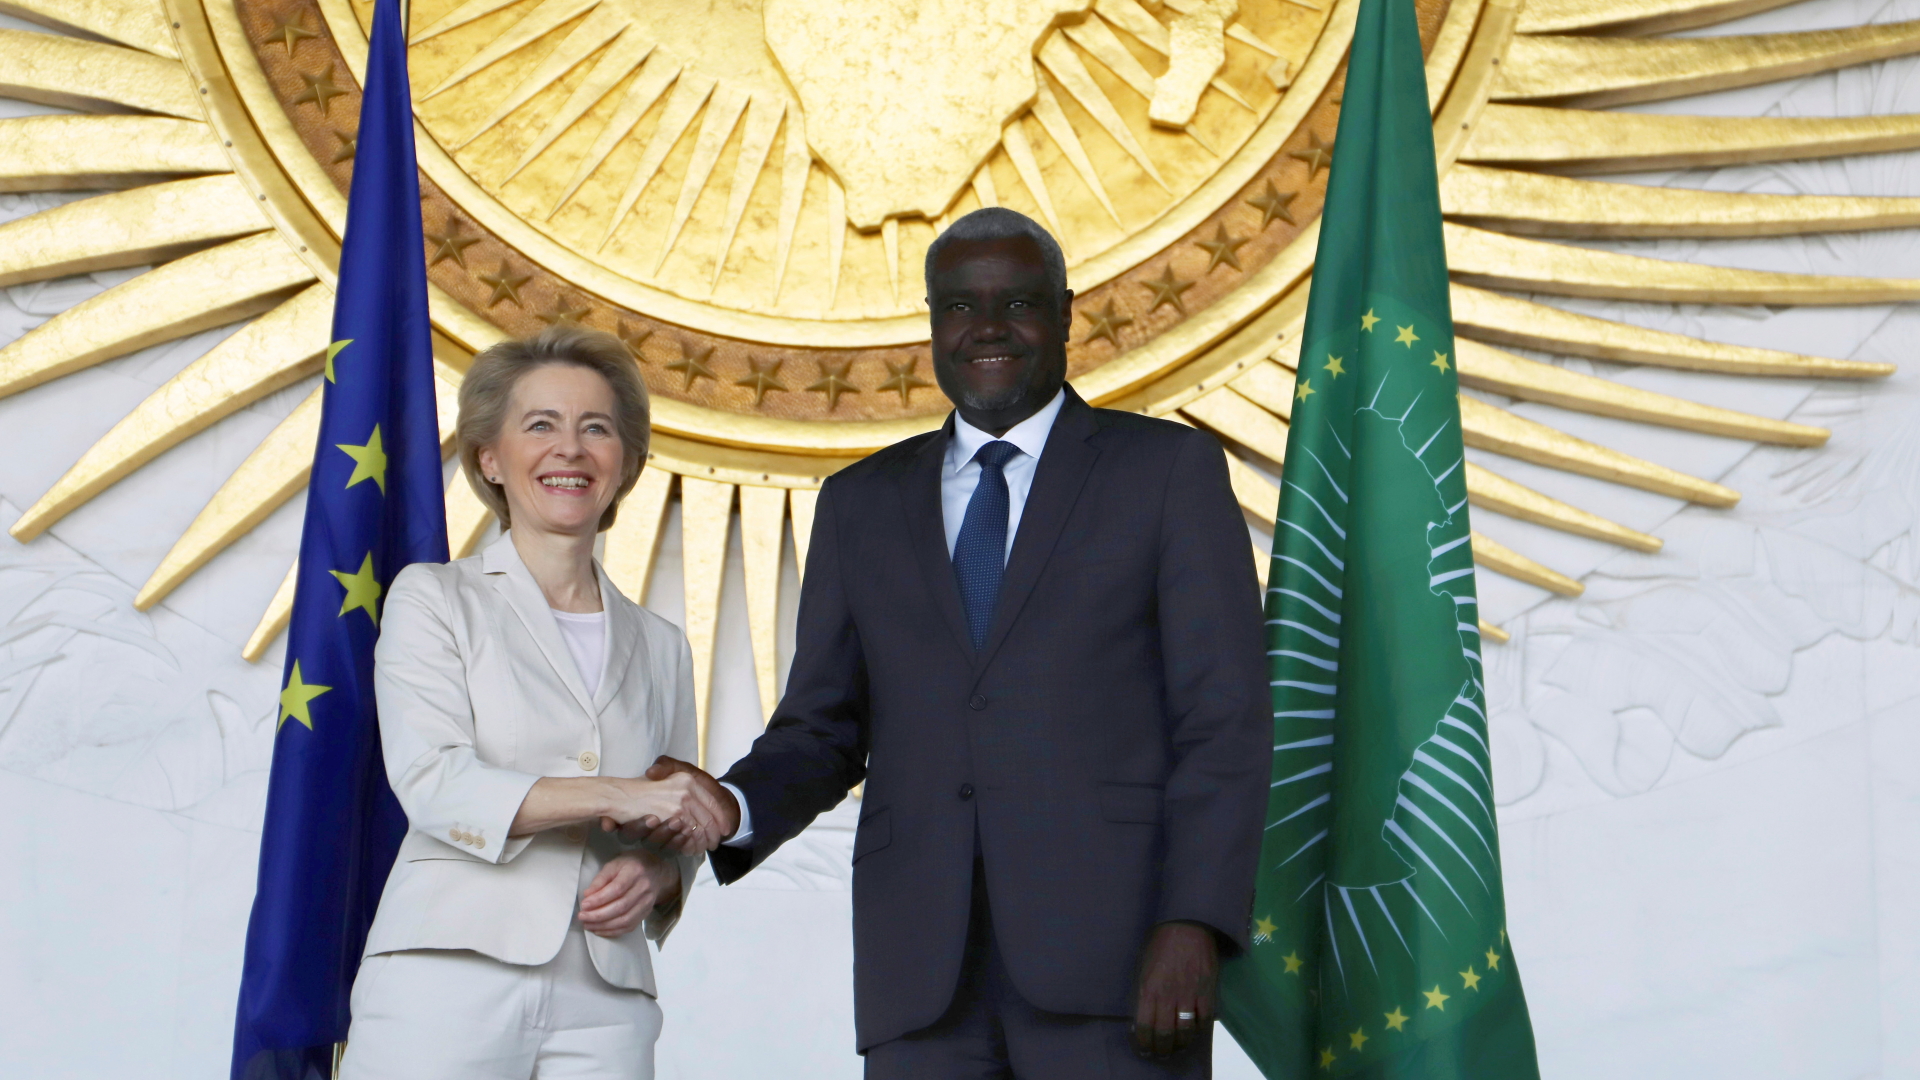 EU-Kommissionspräsidentin Ursula von der Leyen bei Handschlag mit dem Chef der Afrikanischen Union, Moussa Faki. | REUTERS